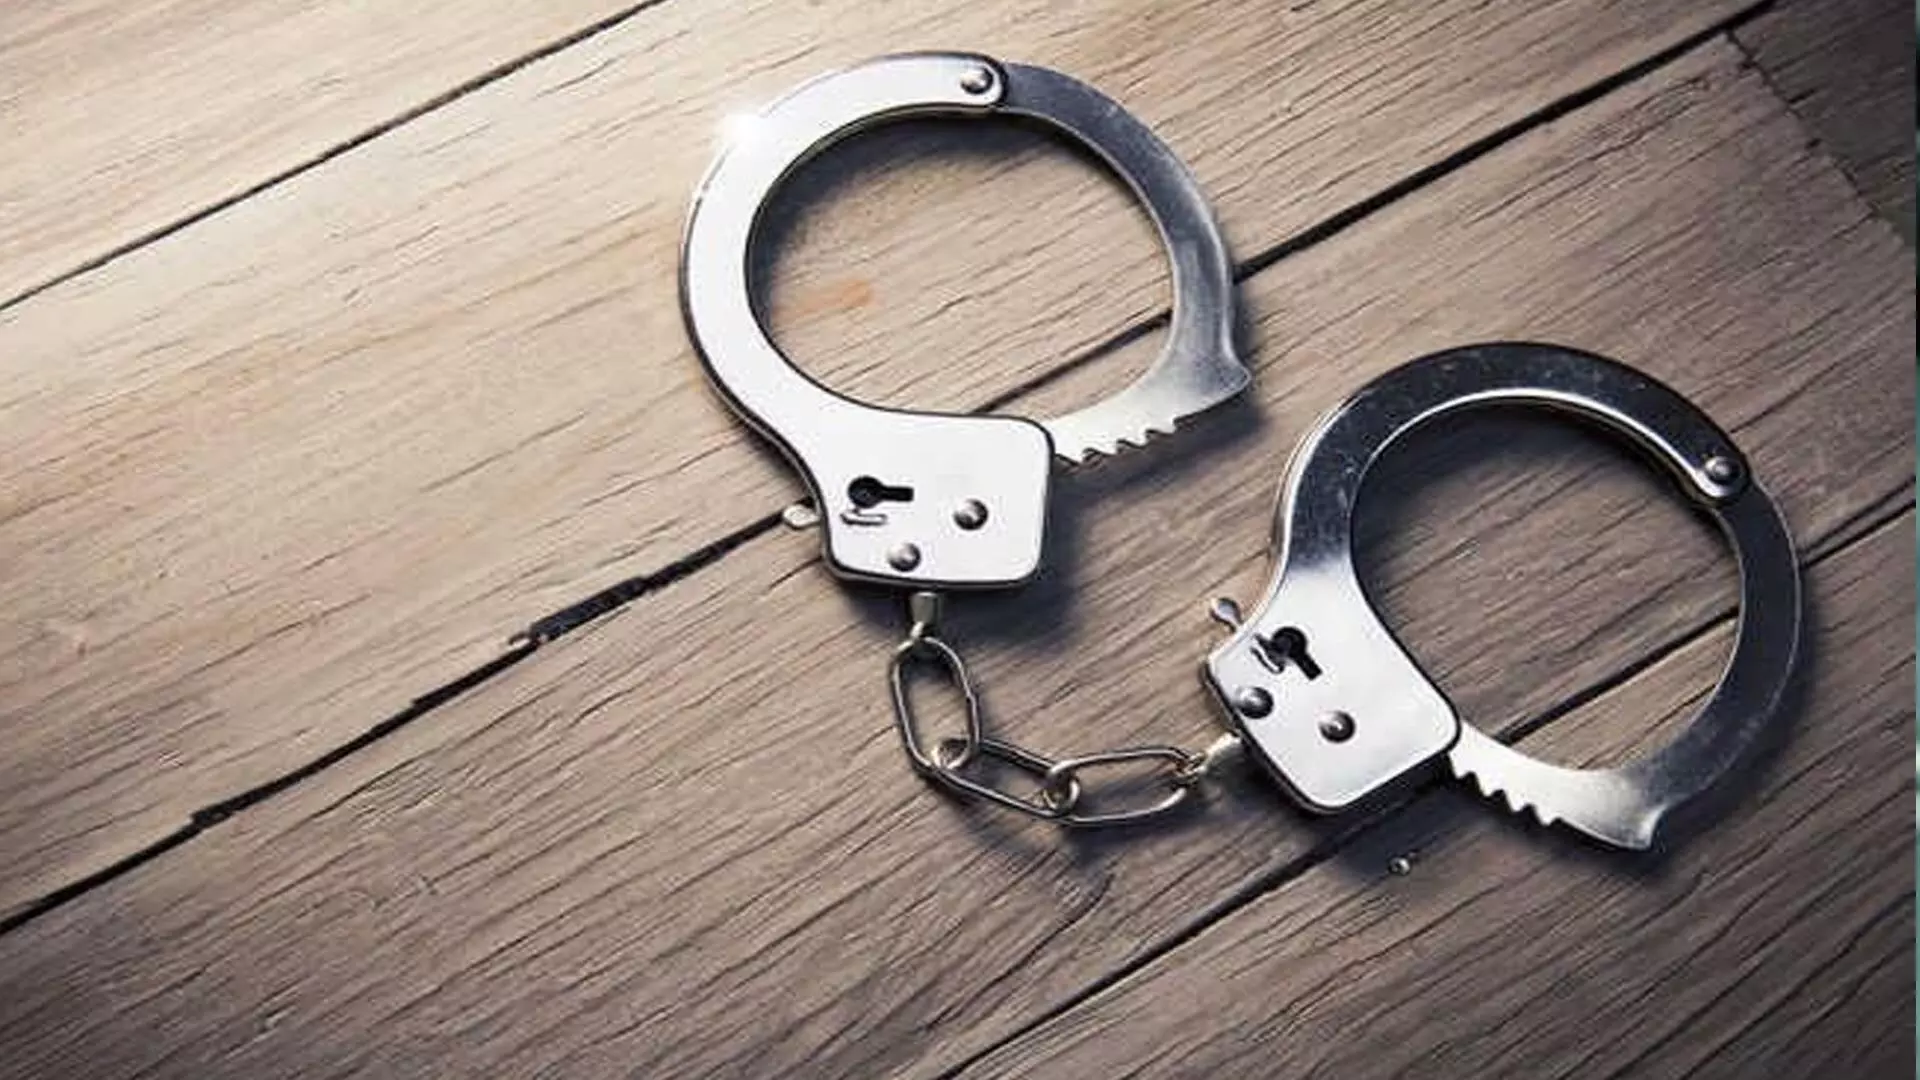 अवैध रूप से क्लिनिक चलाने के आरोप में एक व्यक्ति को गिरफ्तार किया गया